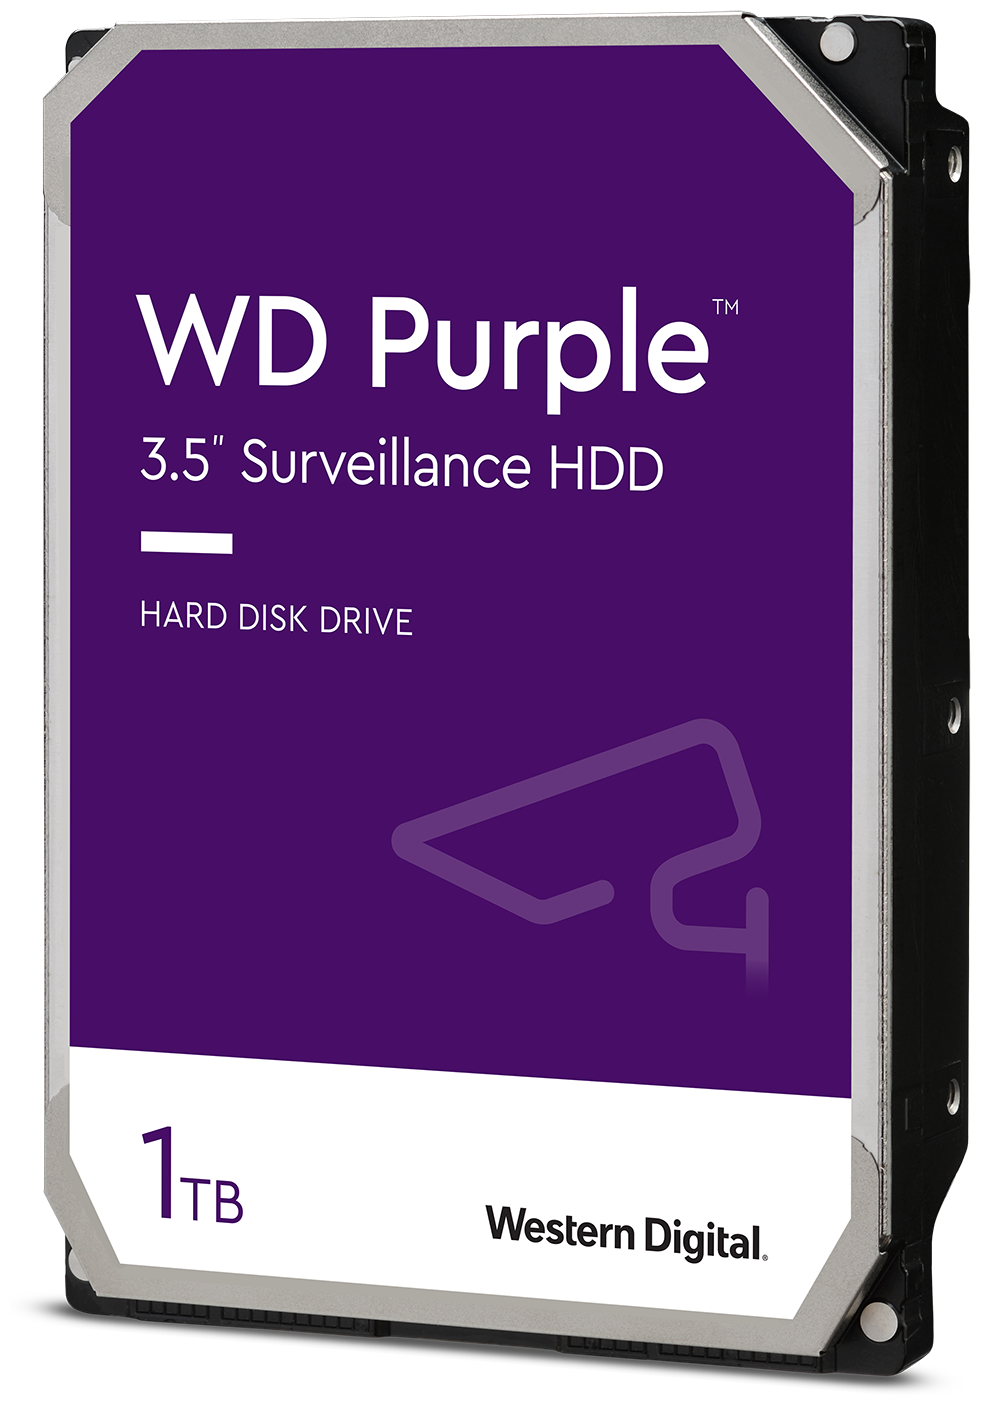 1 ТБ Внутренний жесткий диск WD Purple (WD10PURZ)